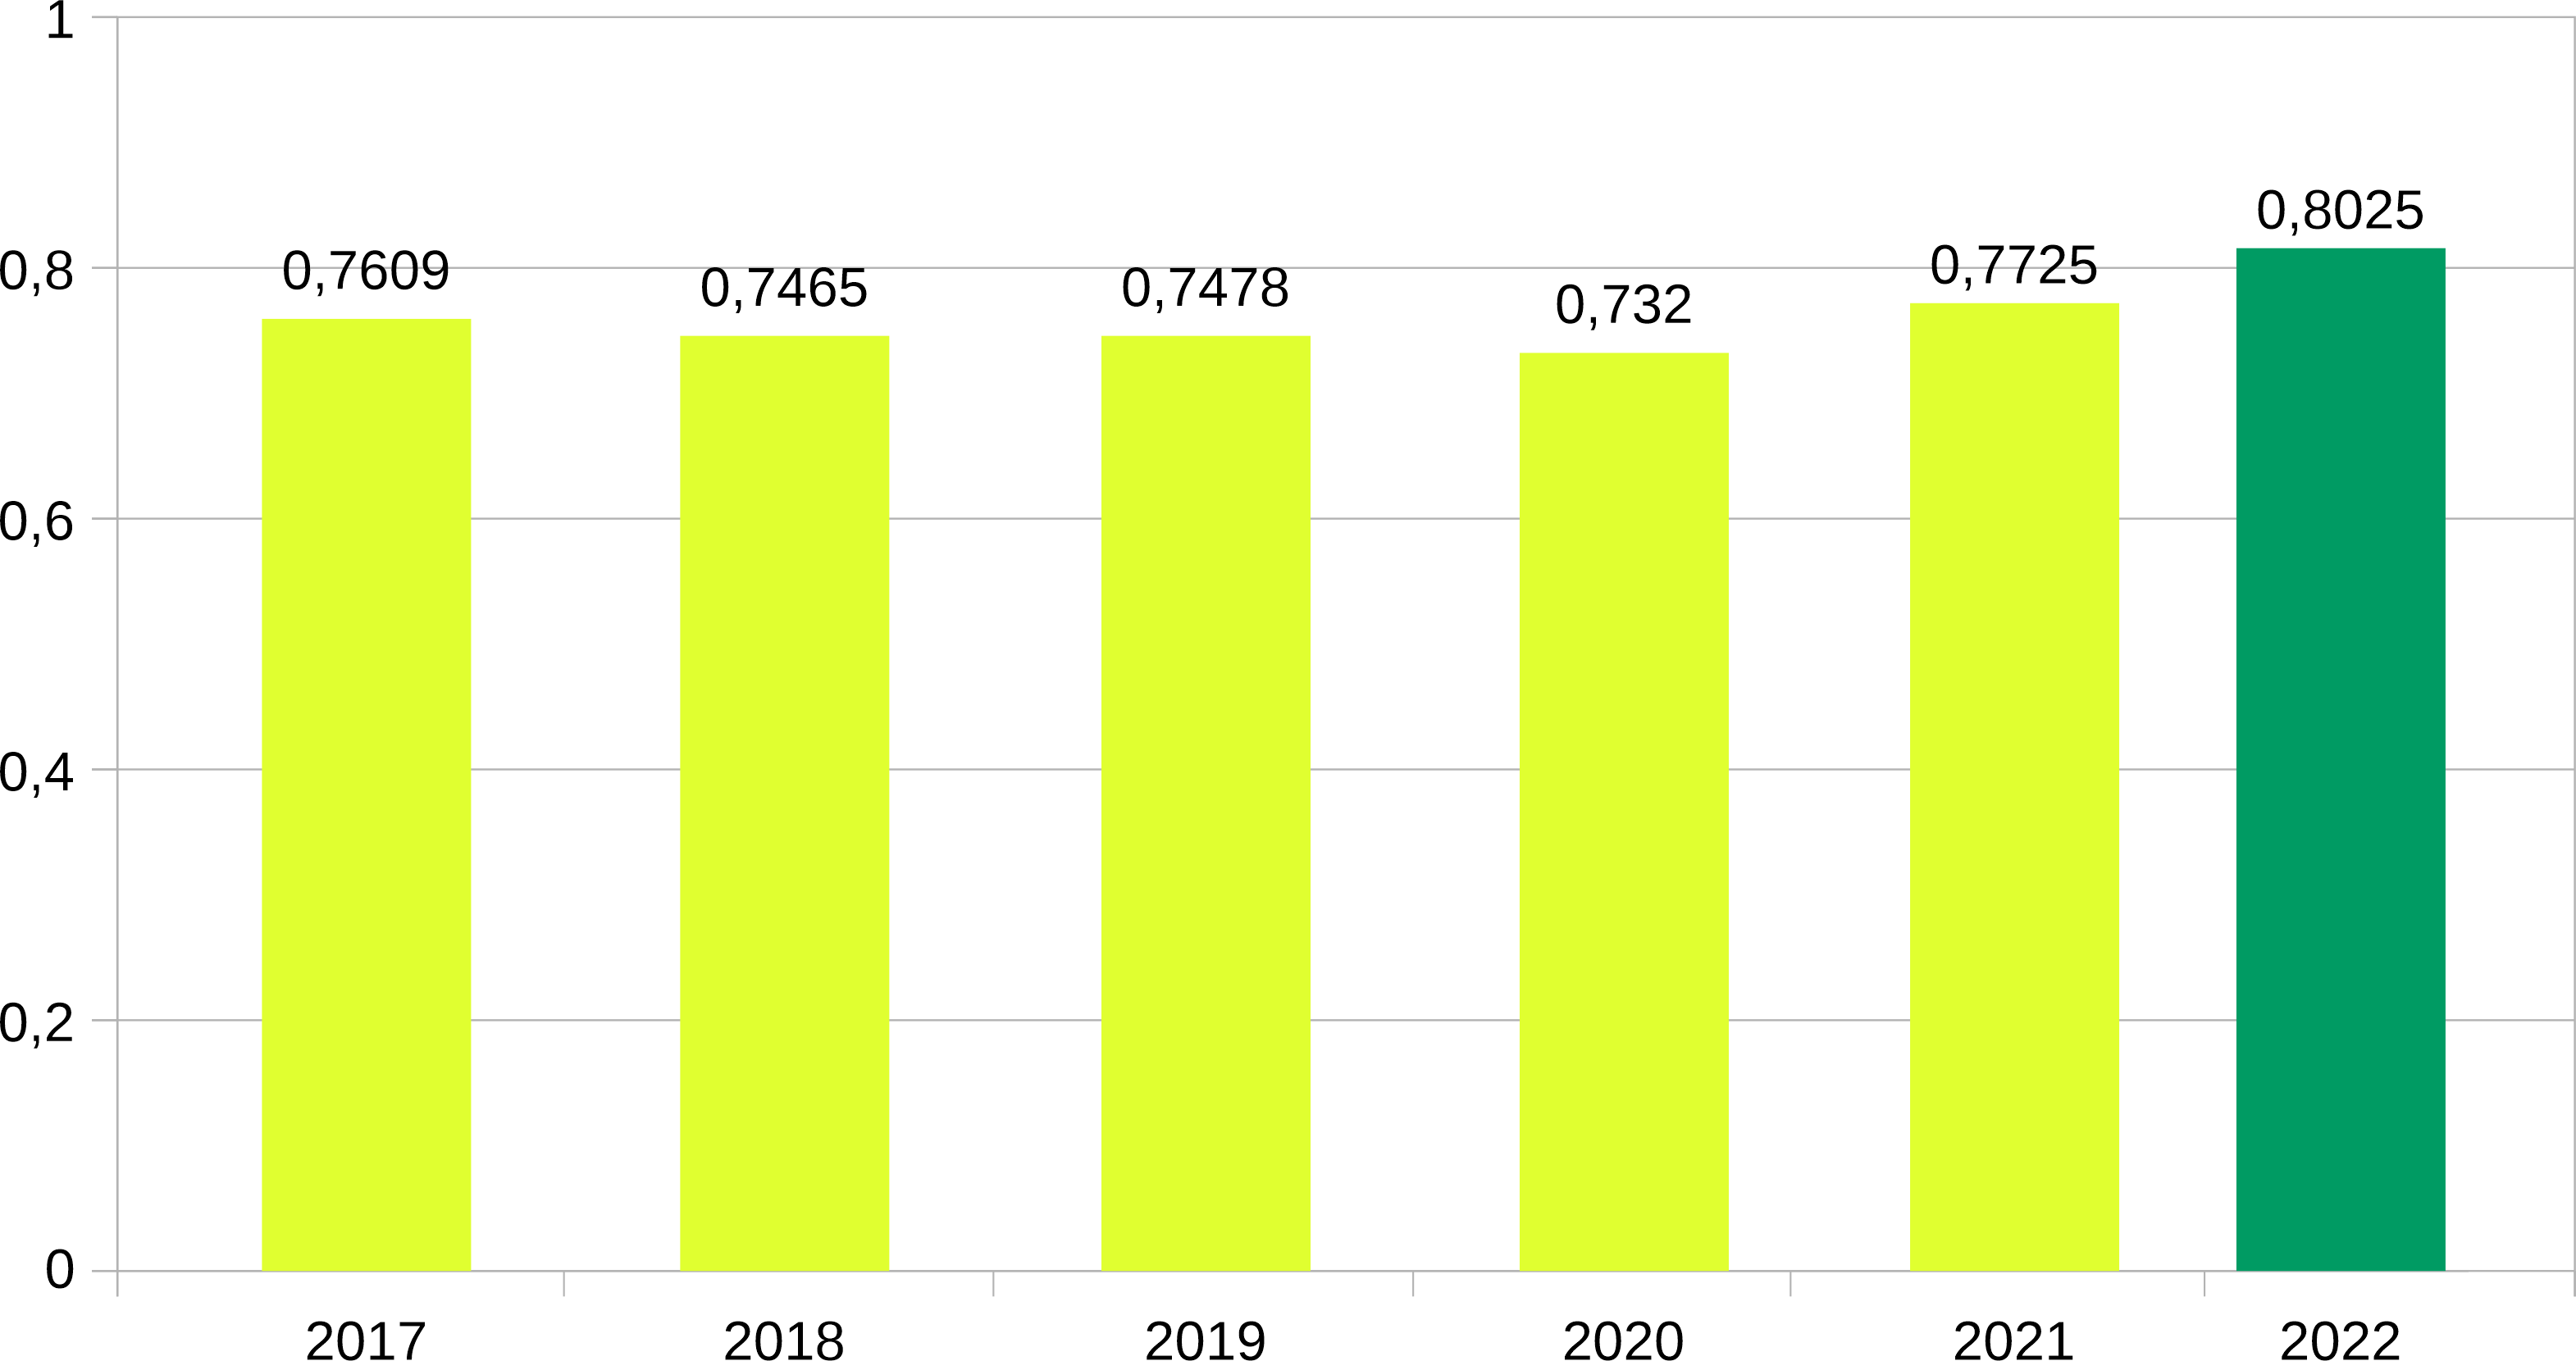 Infográfico de barras, com dados de base anual de 2017 à 2022, eixo Y representa pontuações que vão de 0 a 1 com intersecções a cada 0,2 pontos. Dados 2017 (0,7609); 2018 (0,7465); 2019 (0,7478); 2020 (0,732); 2021 (0,7725); 2022 (0,8025).